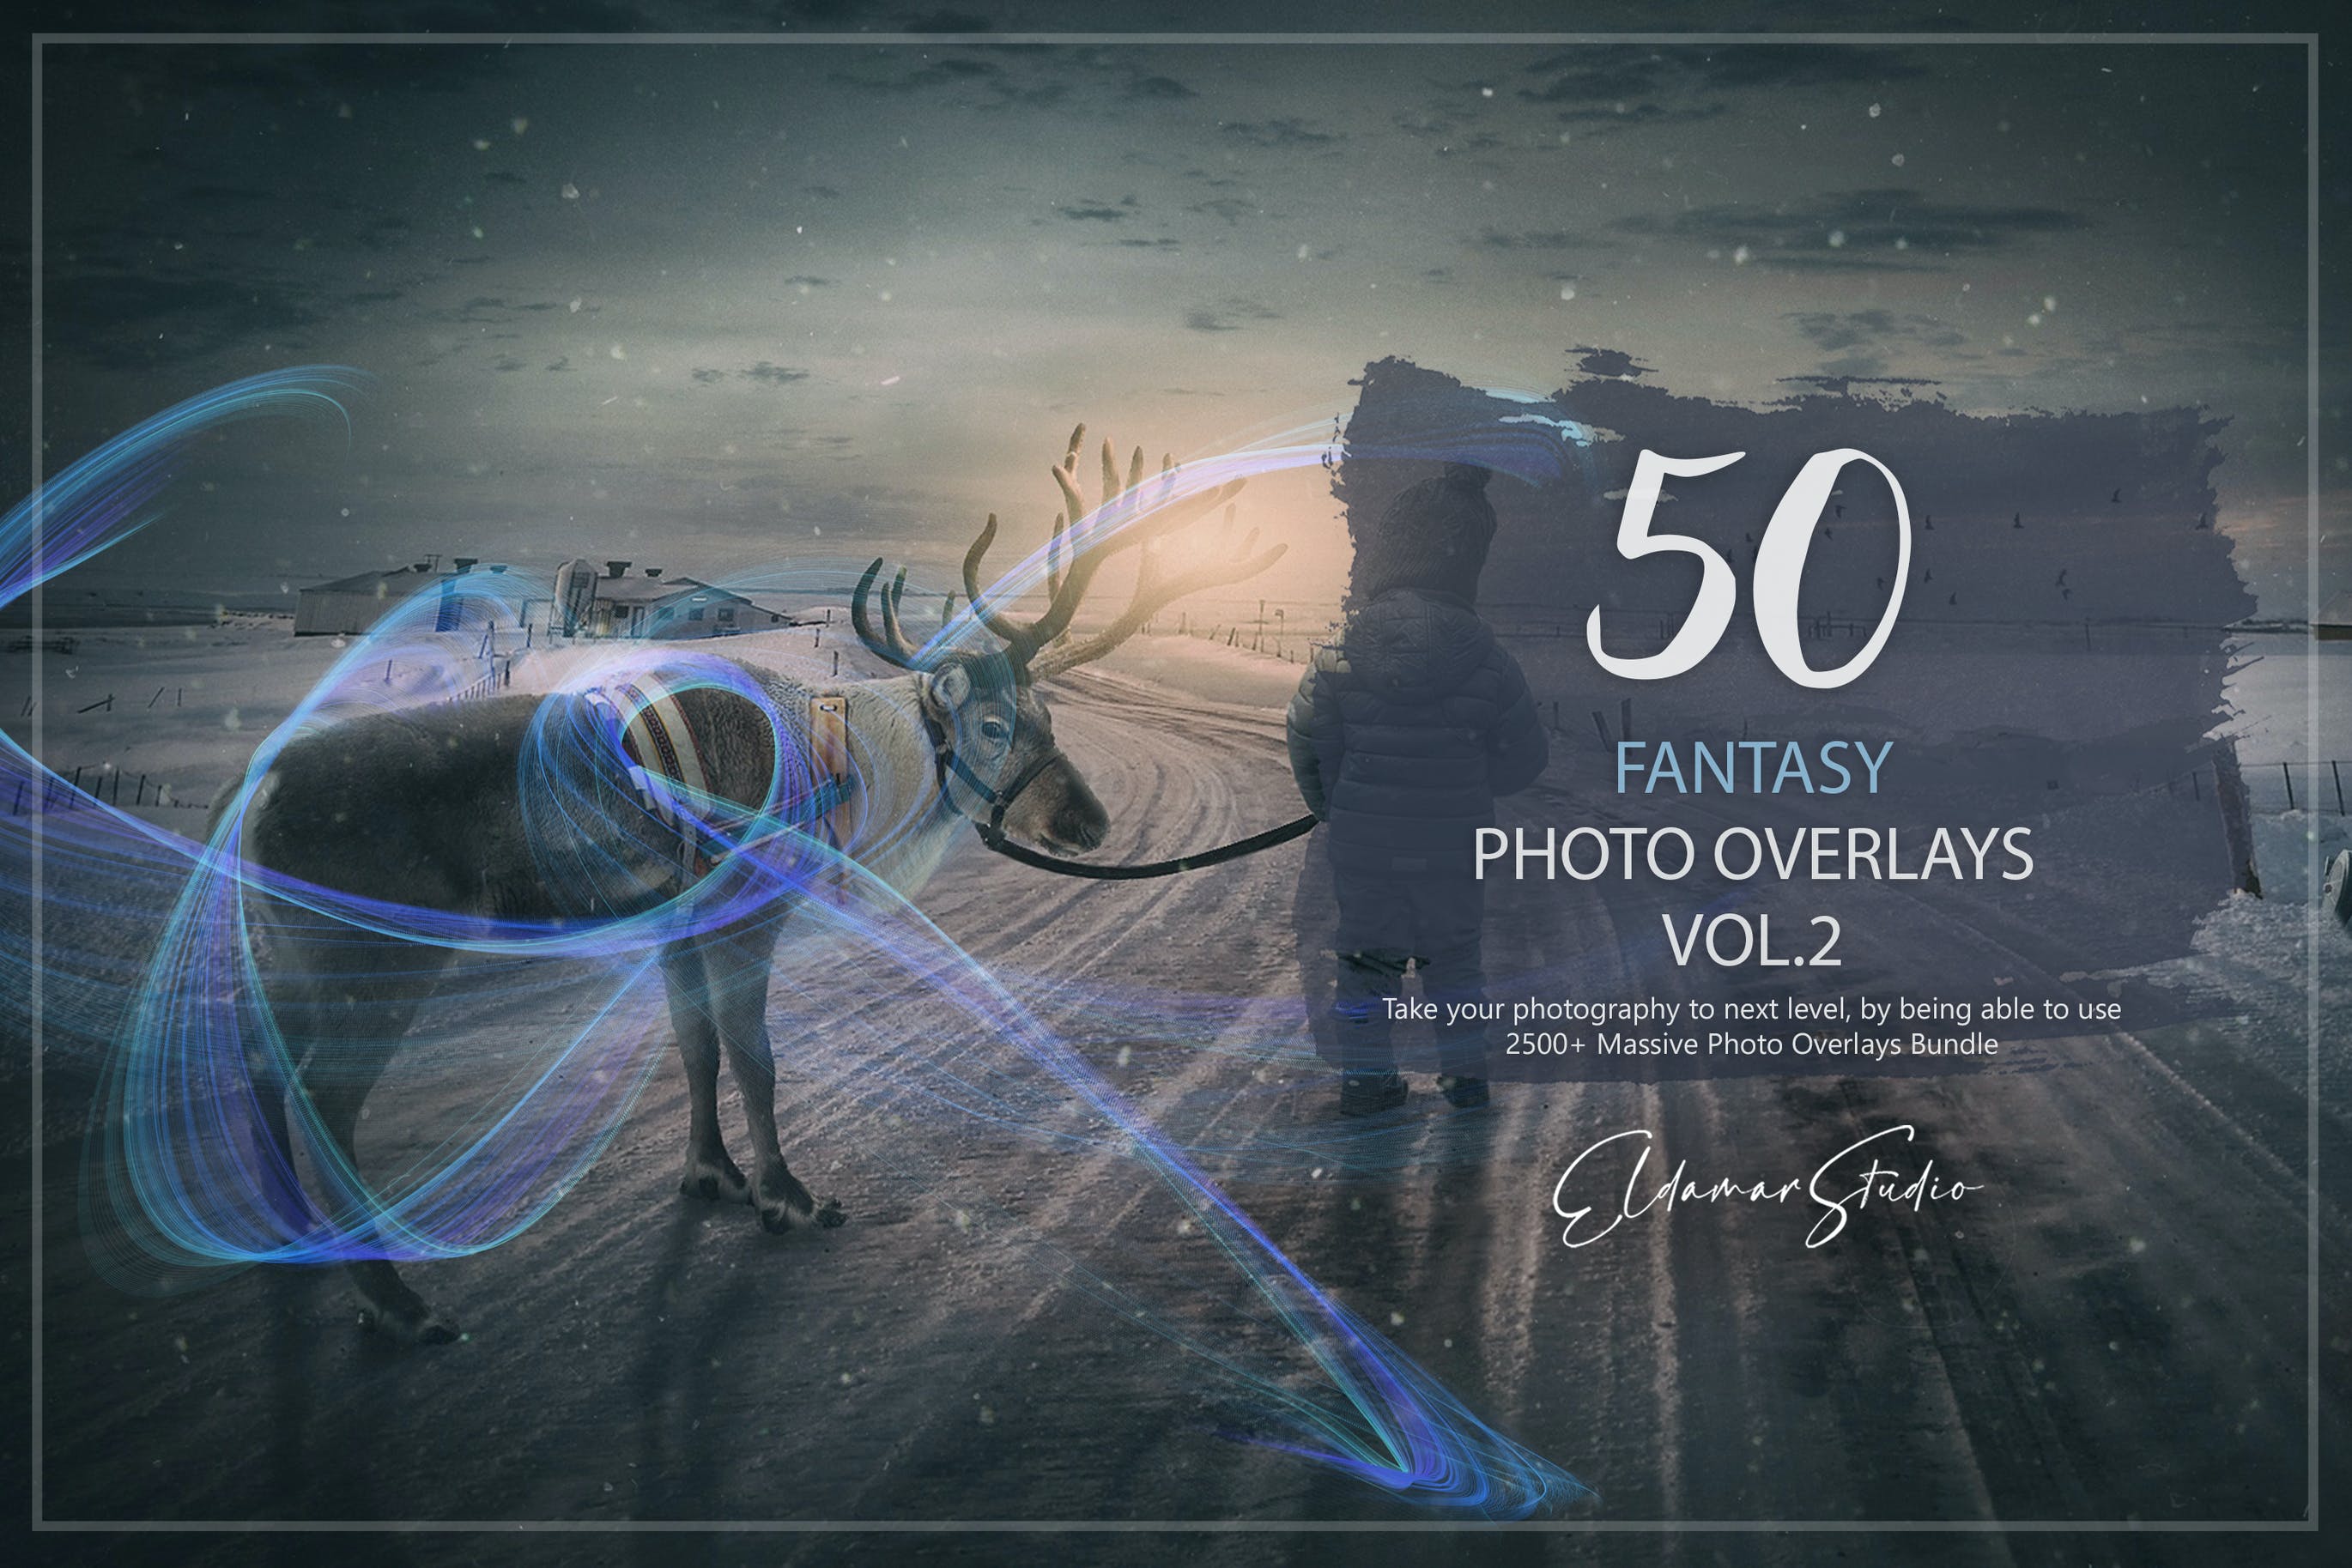 50个梦幻彩色几何线条照片叠层背景素材v2 50 Fantasy Photo Overlays – Vol. 2 图片素材 第1张